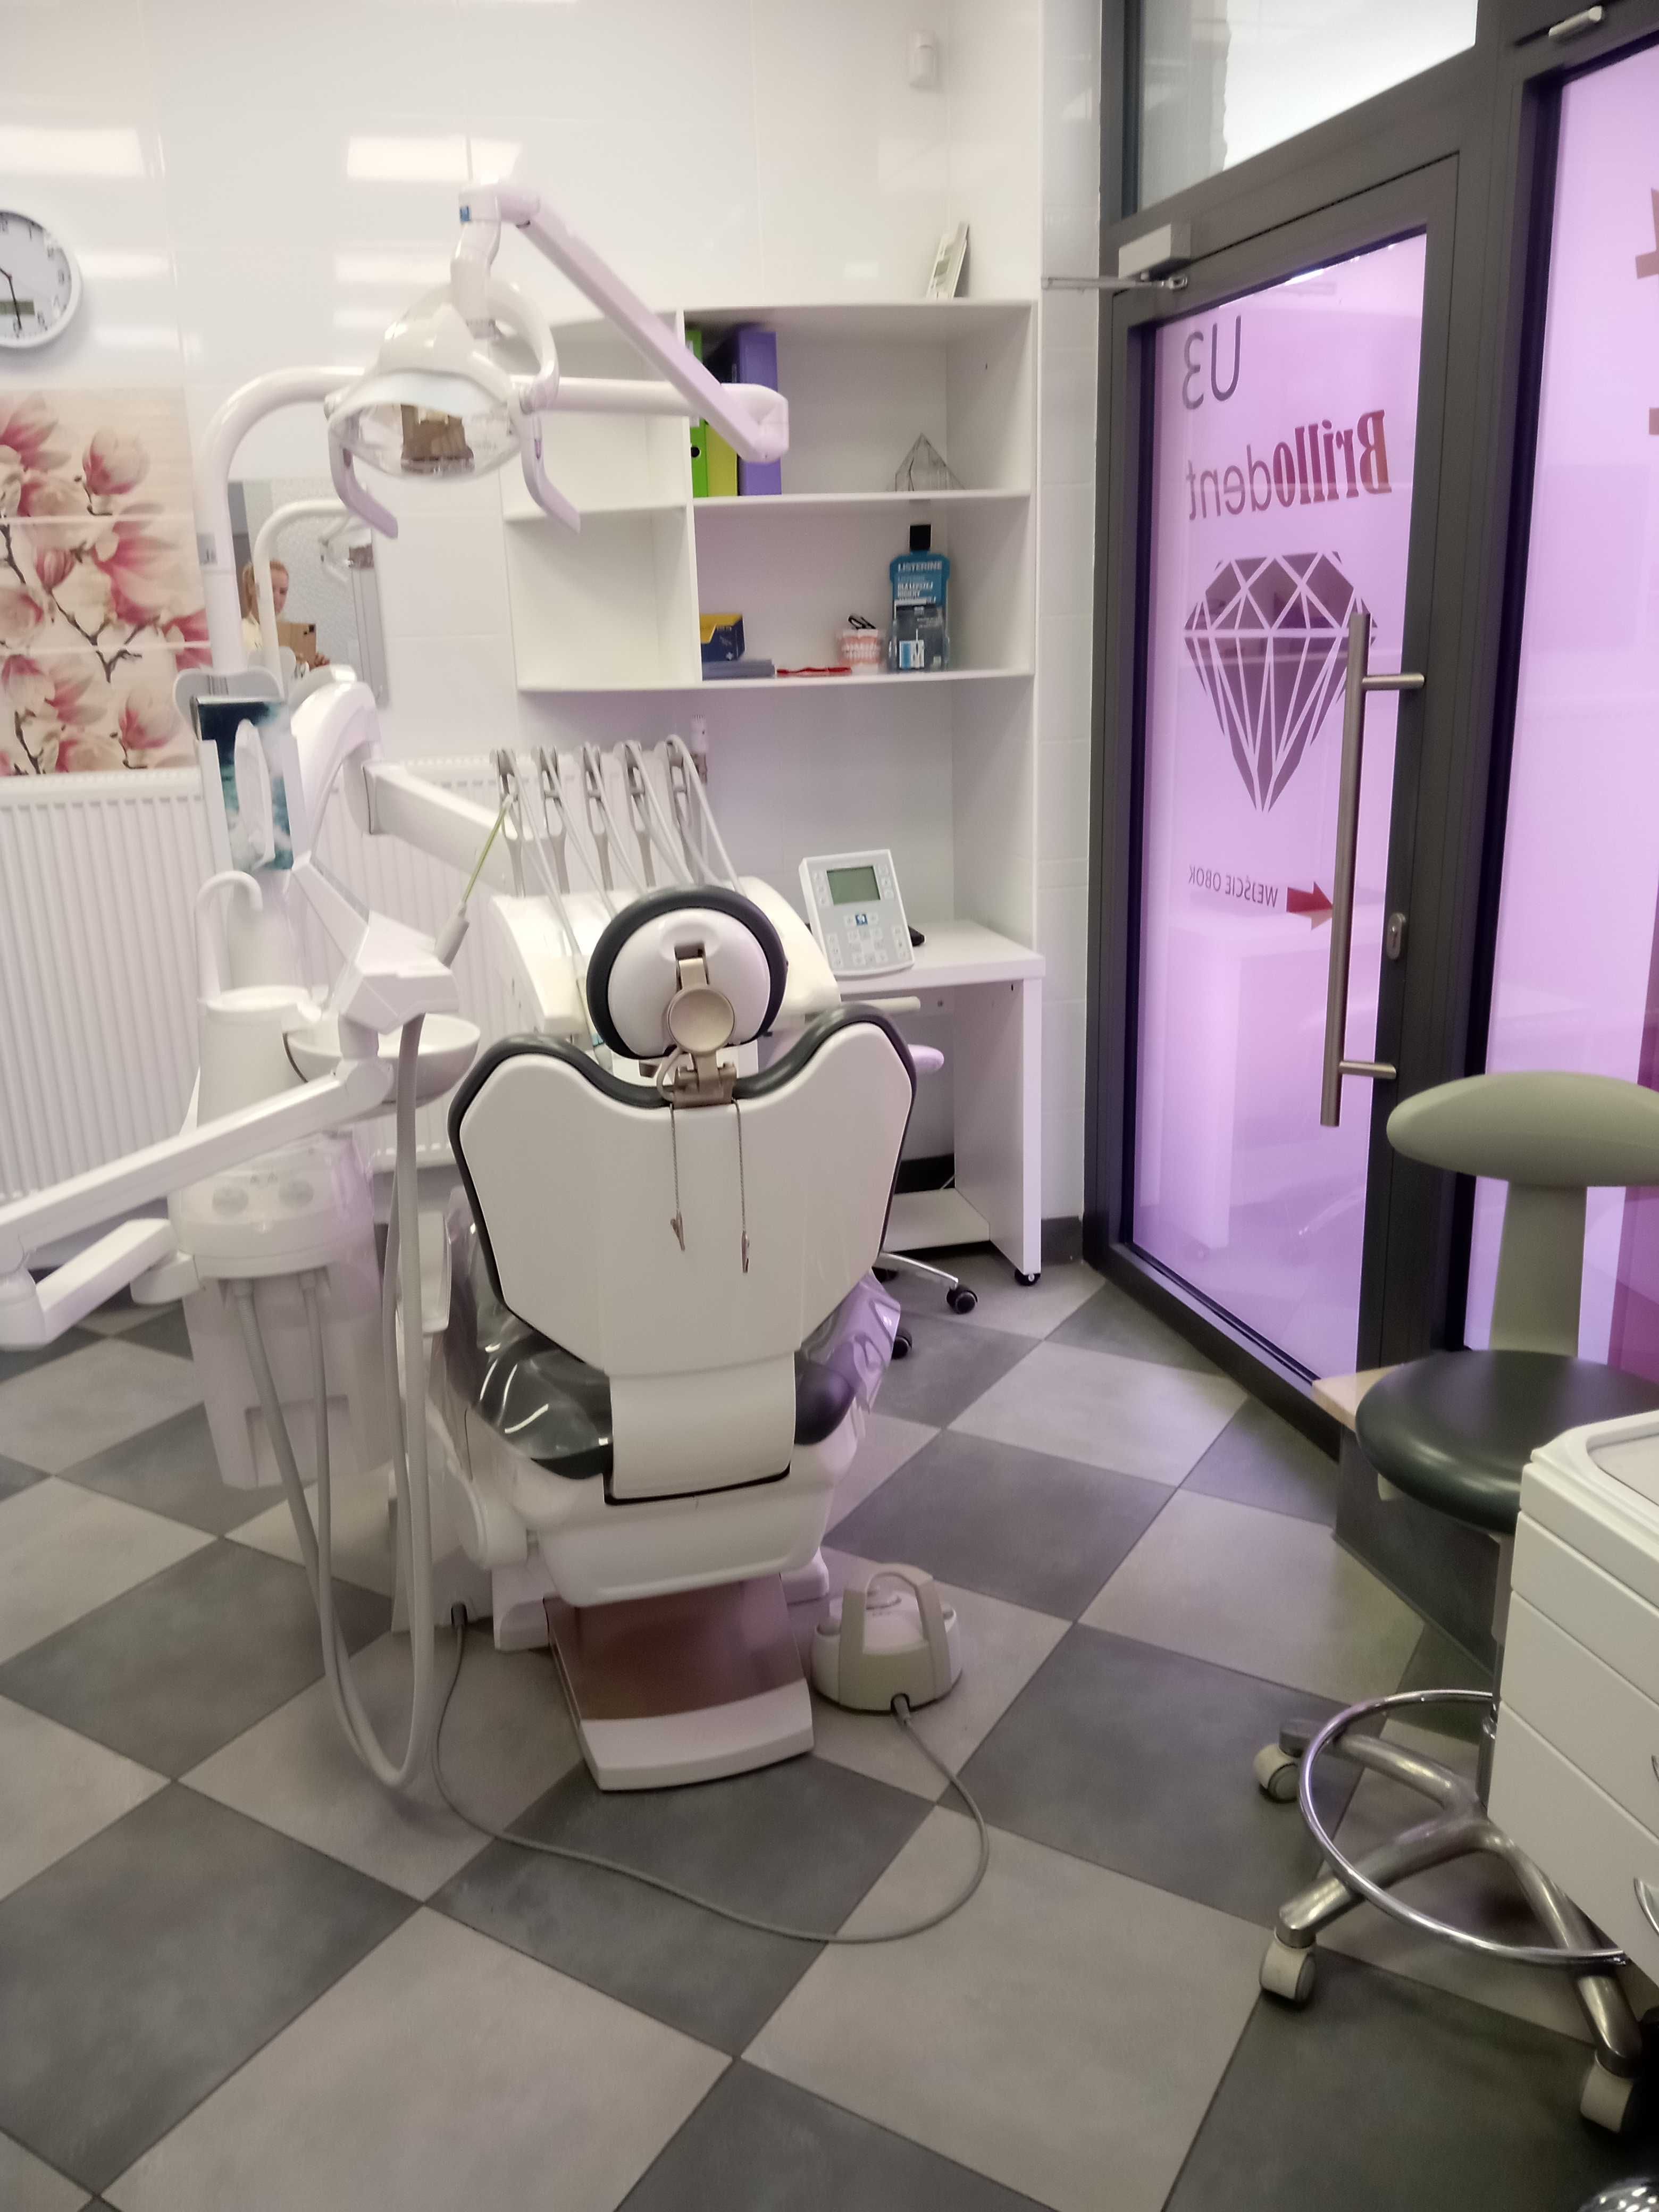 Wynajmę kompletny gabinet stomatologiczny w Białymstoku.